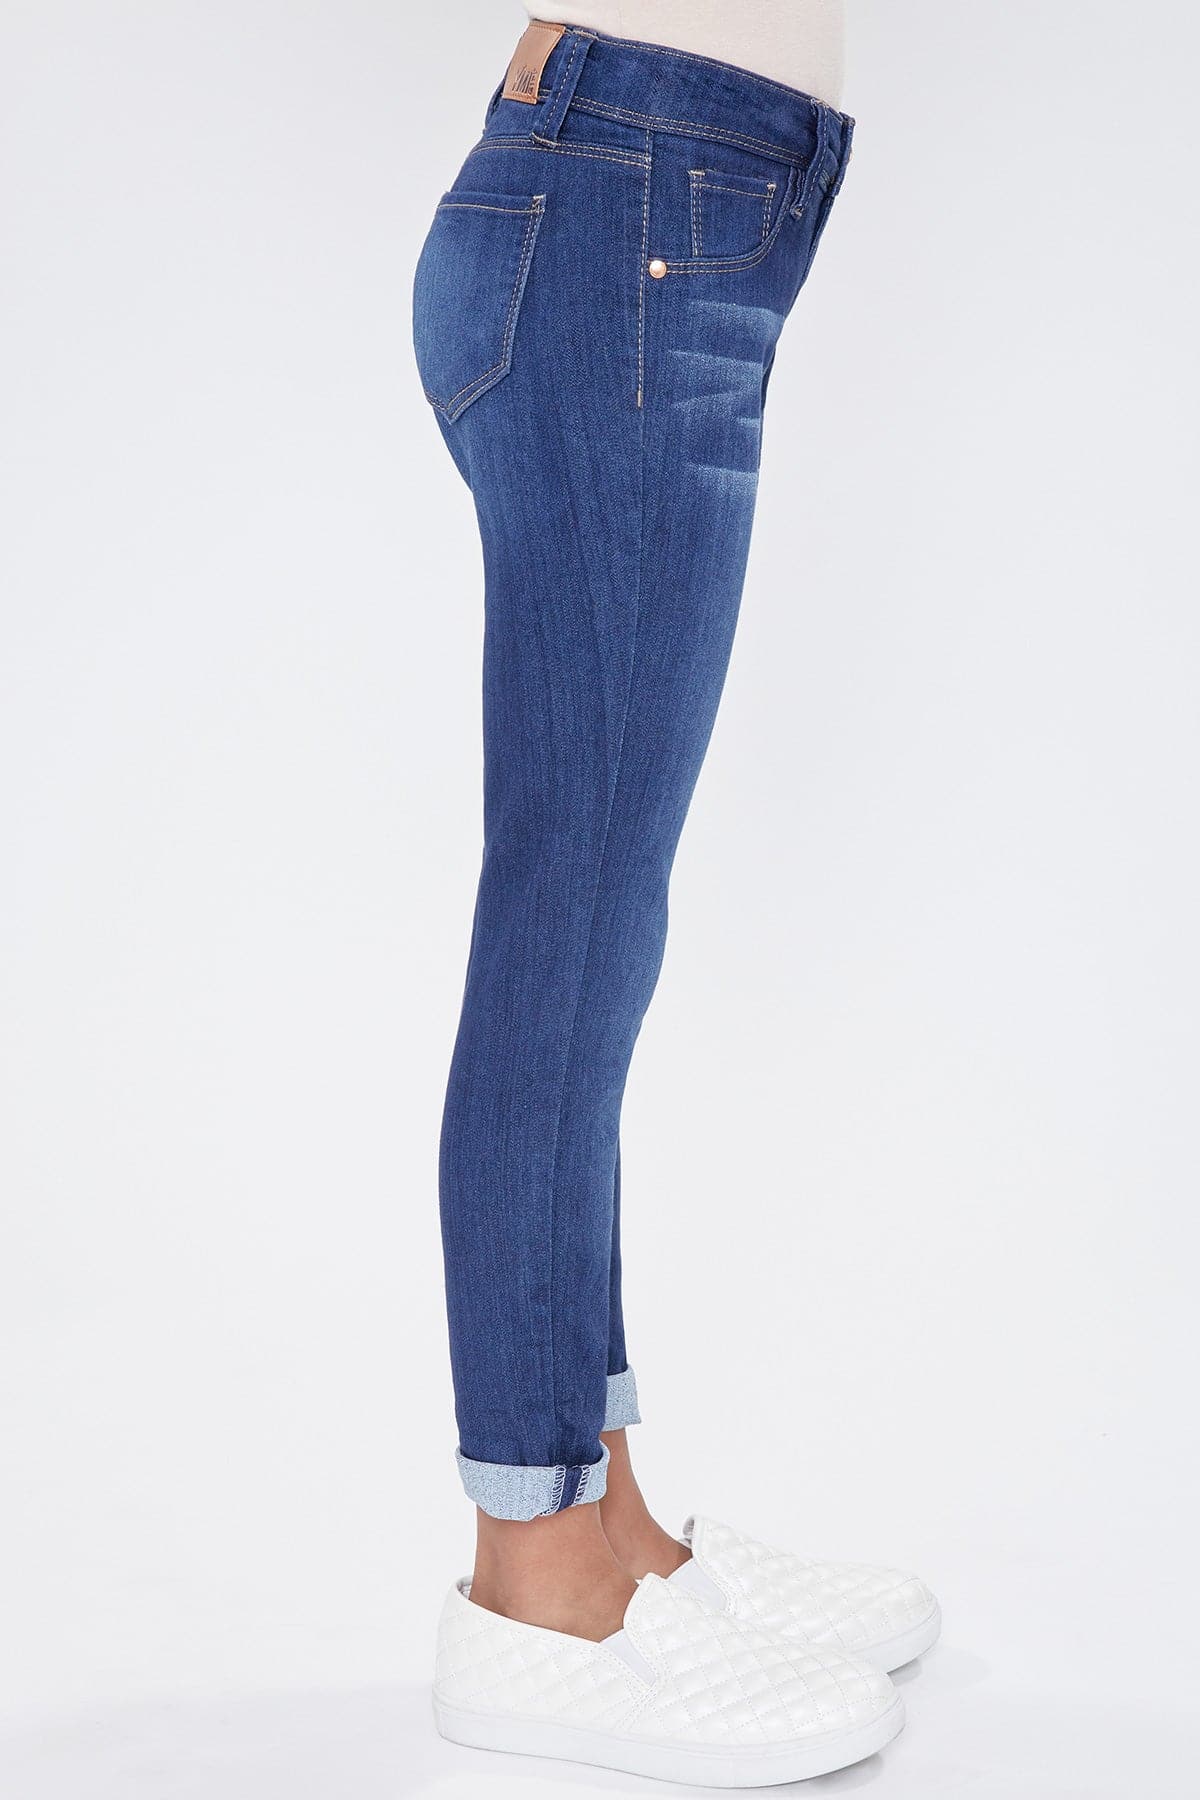 YMI Optional Denim Girls Cuff JEANS – Jeans Skinny from YMI